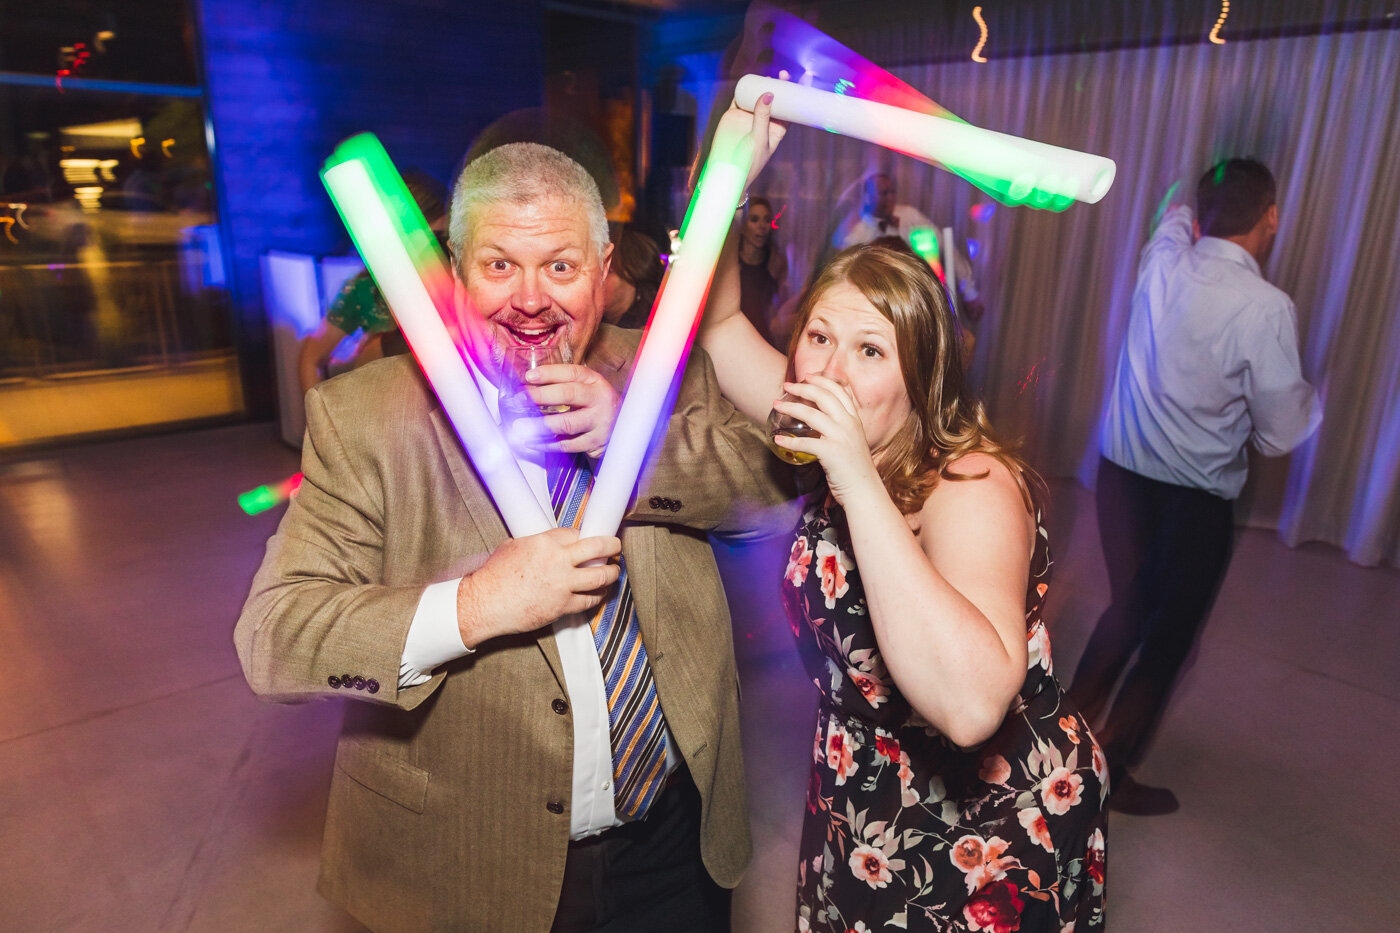 glow-stick-wedding-reception